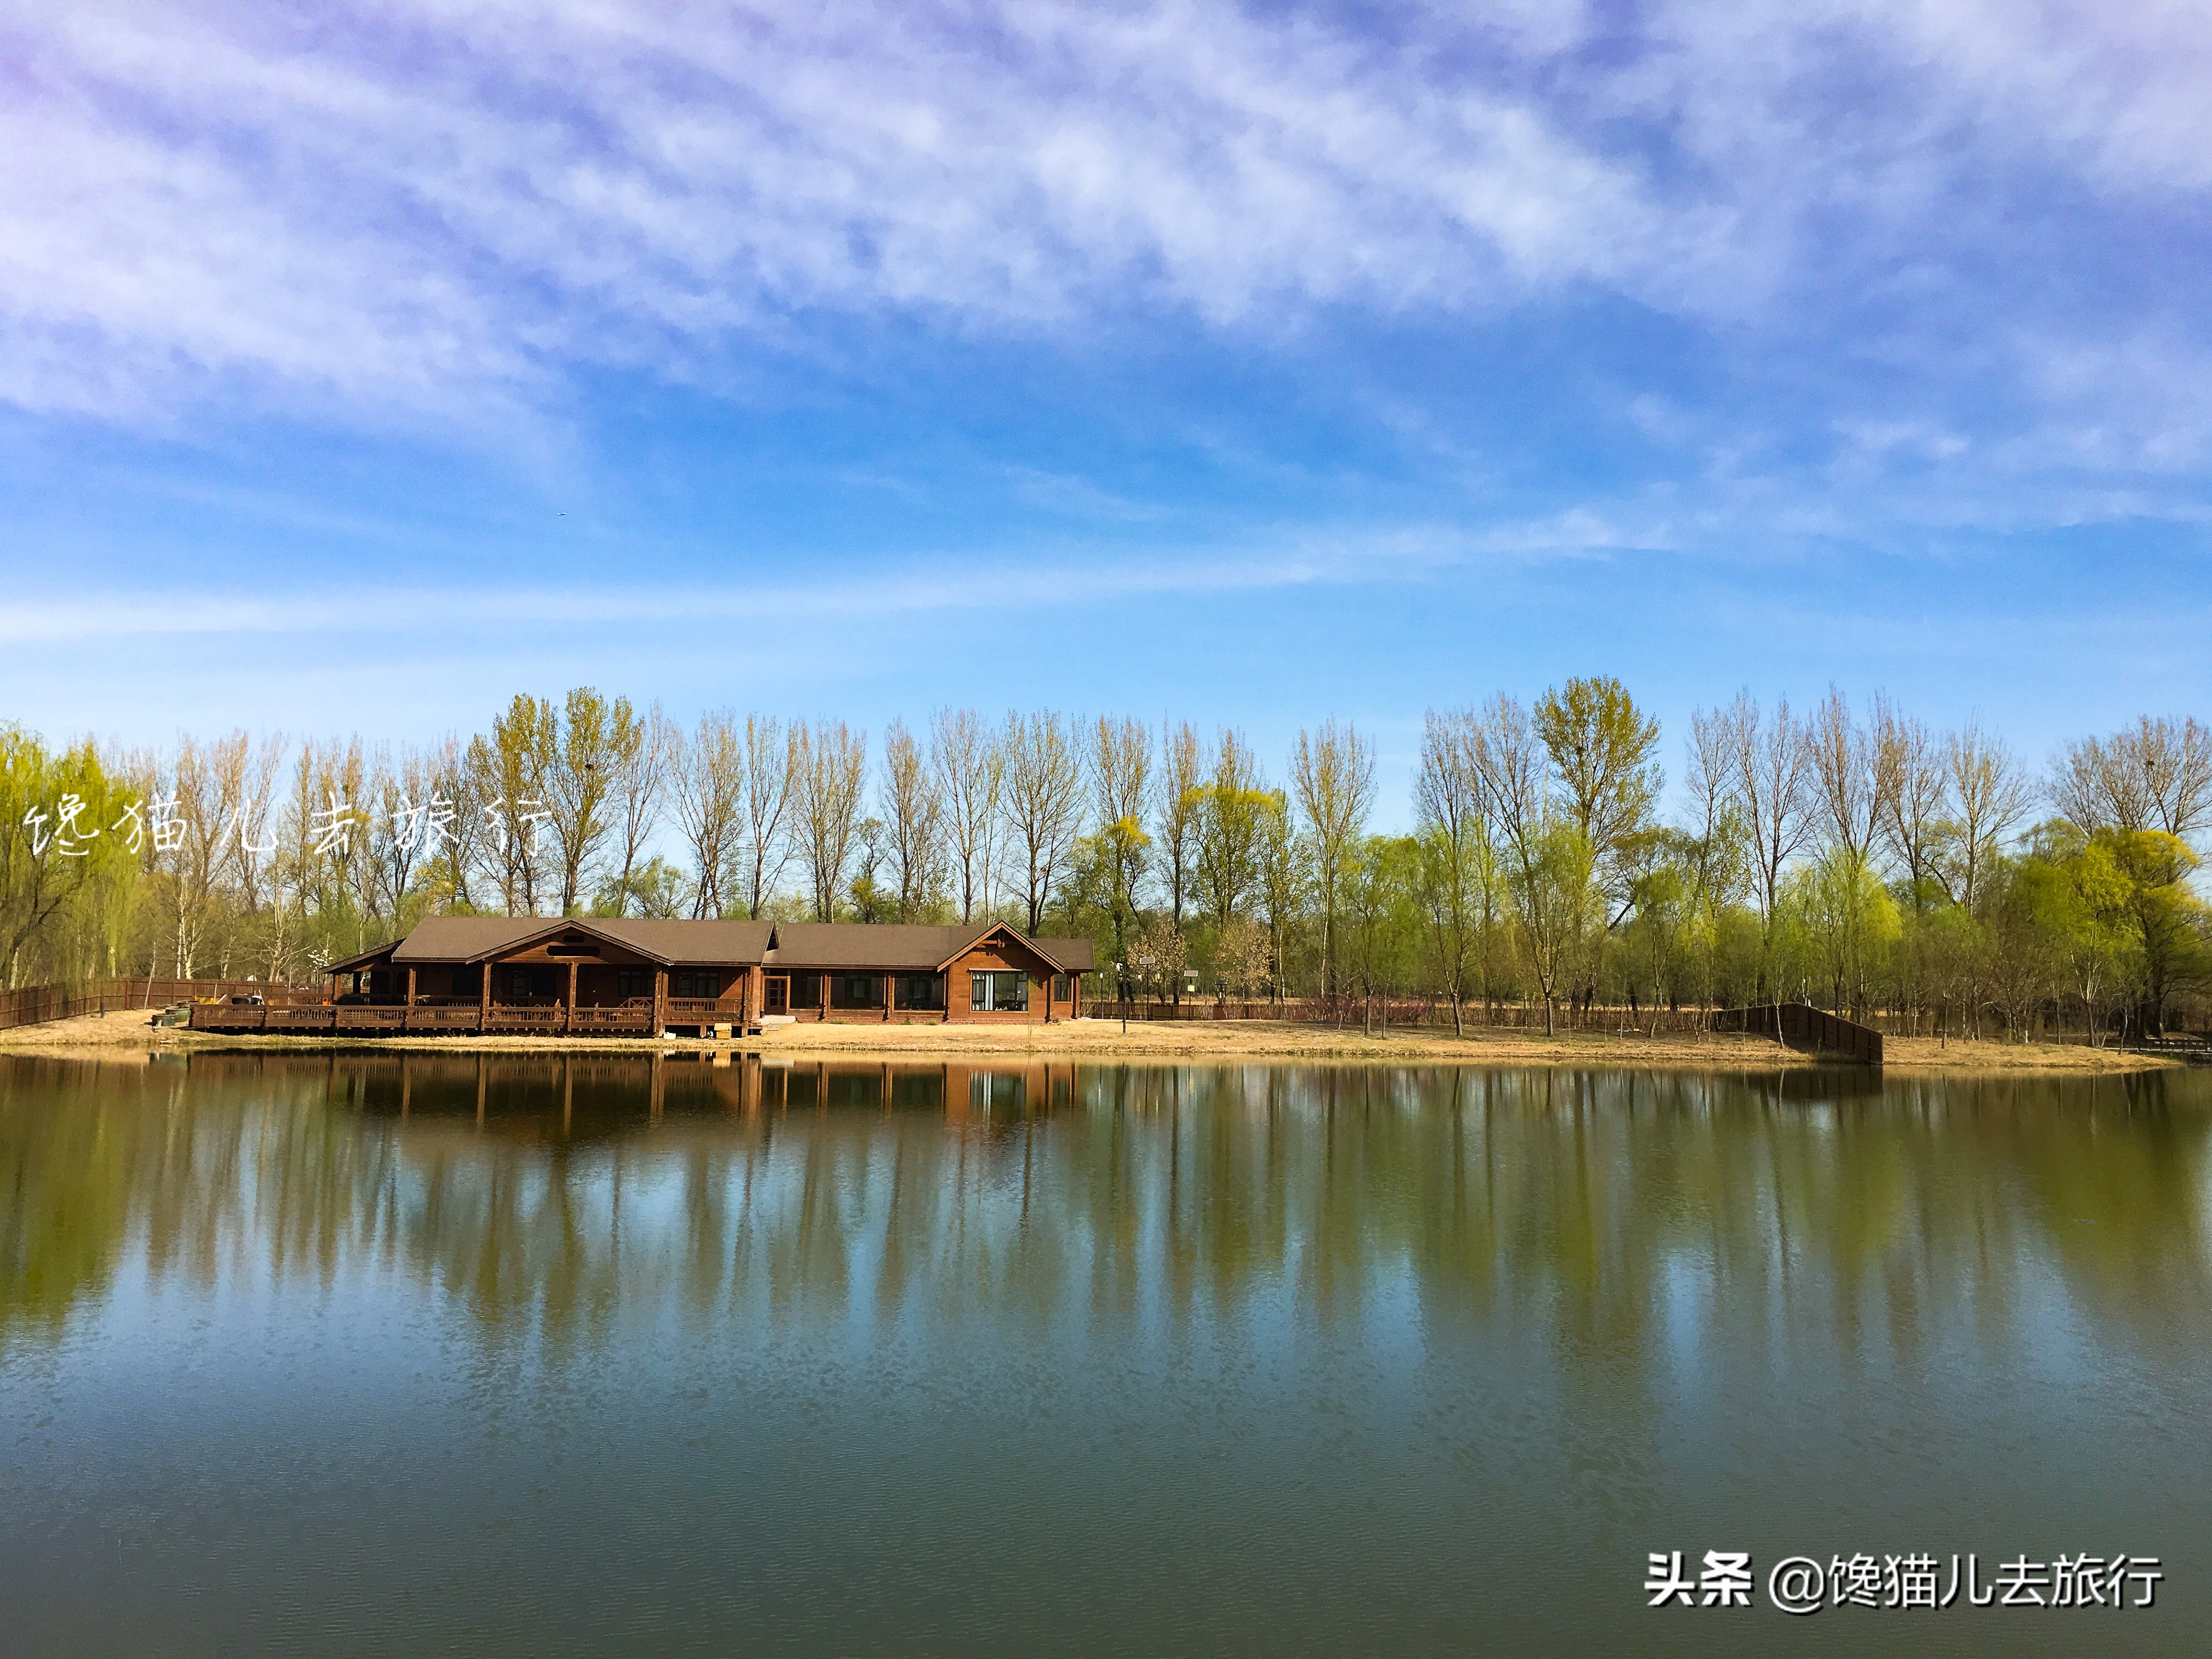 北京郊区一日游或者长城一日游有什么高质量又省心的玩法吗